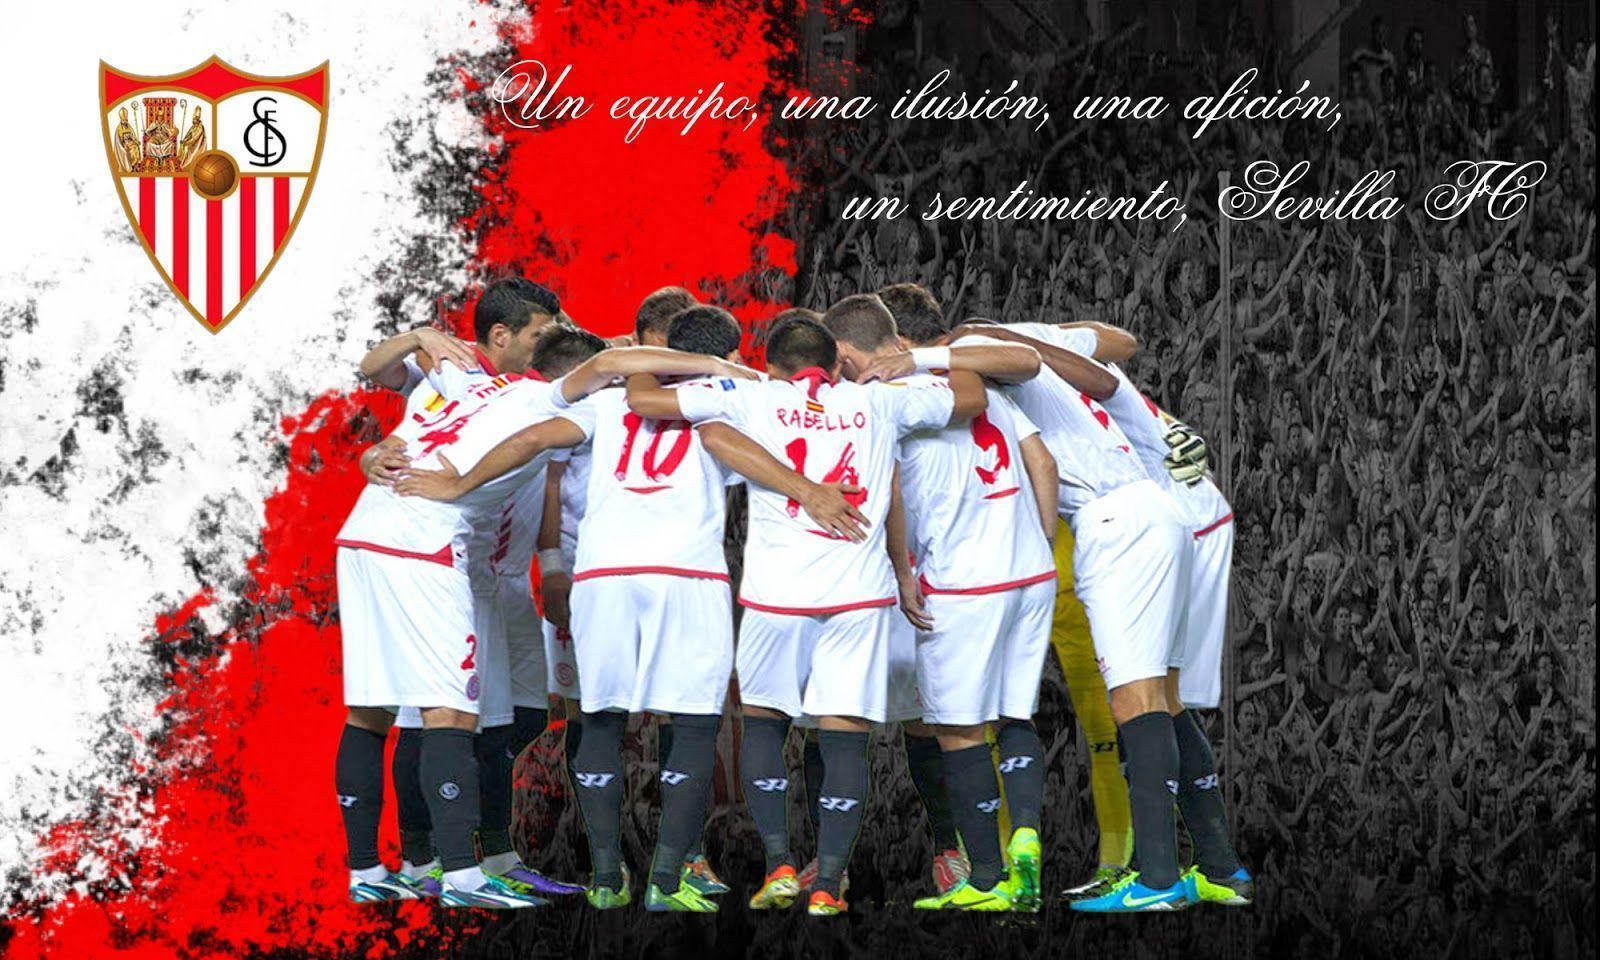 Un equipo, una ilusión, una afición, un sentimiento, Sevilla FC